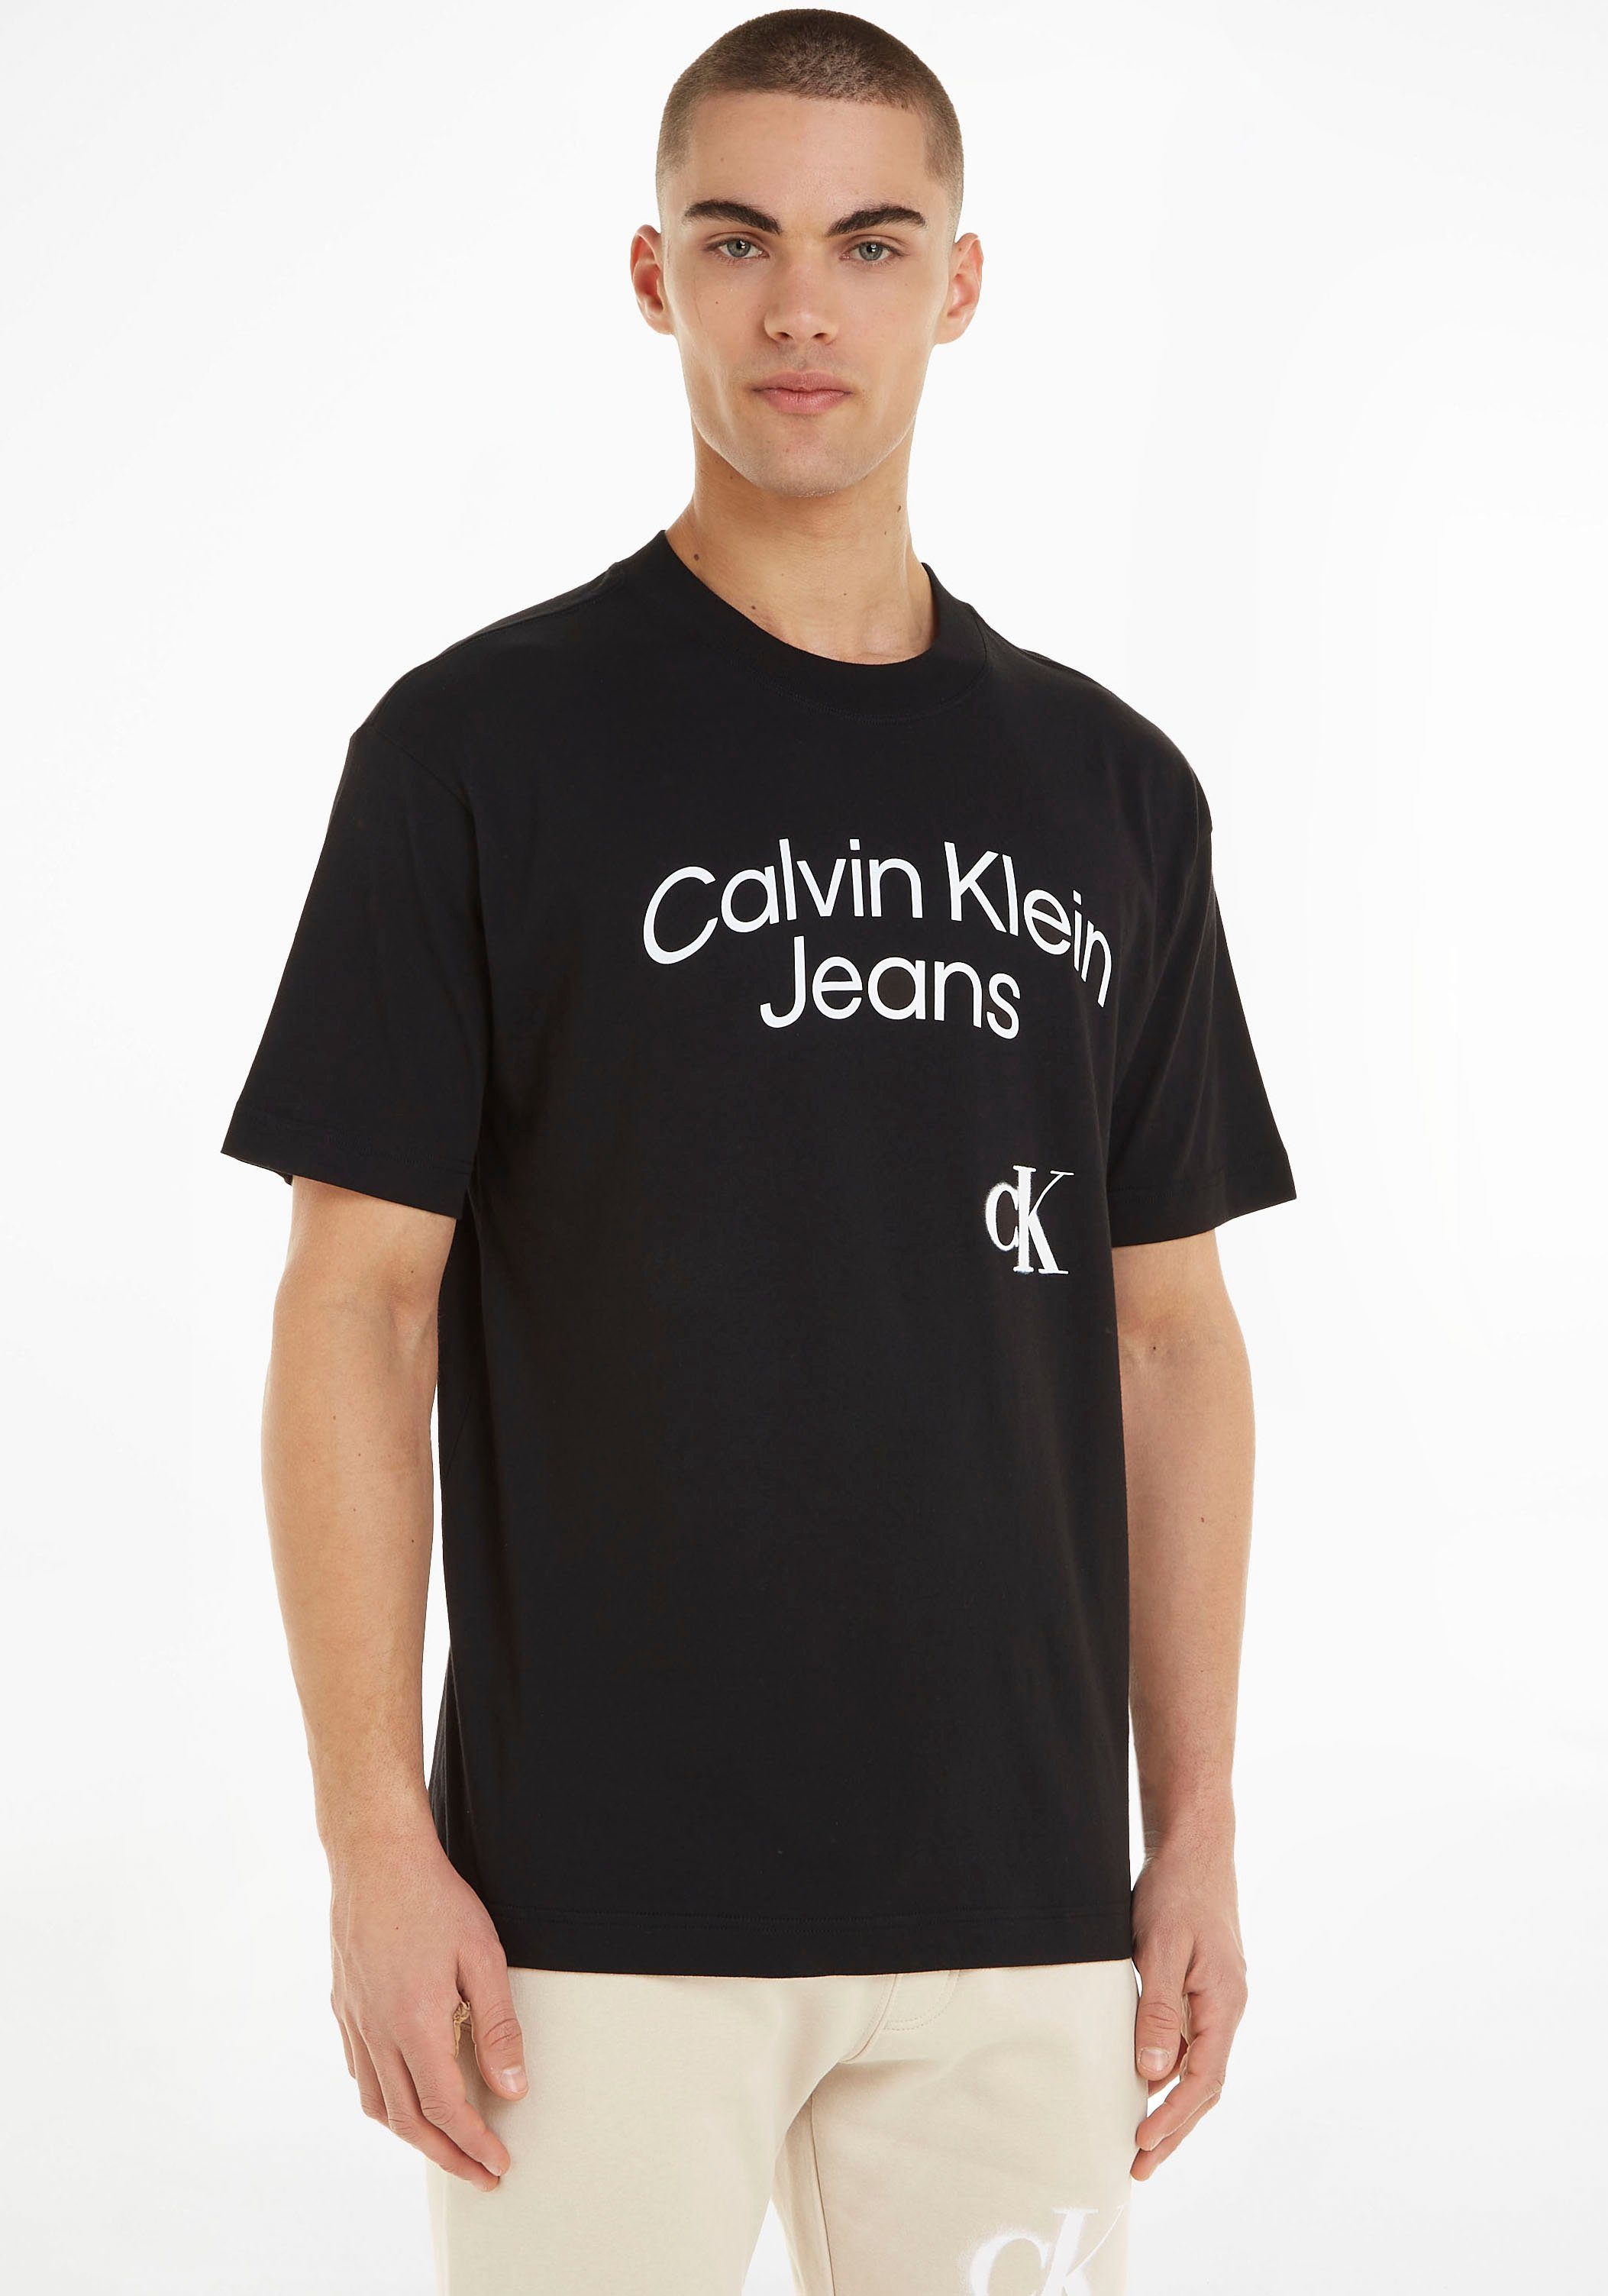 Calvin Klein Jeans T-Shirt mit großem Logoschriftzug schwarz